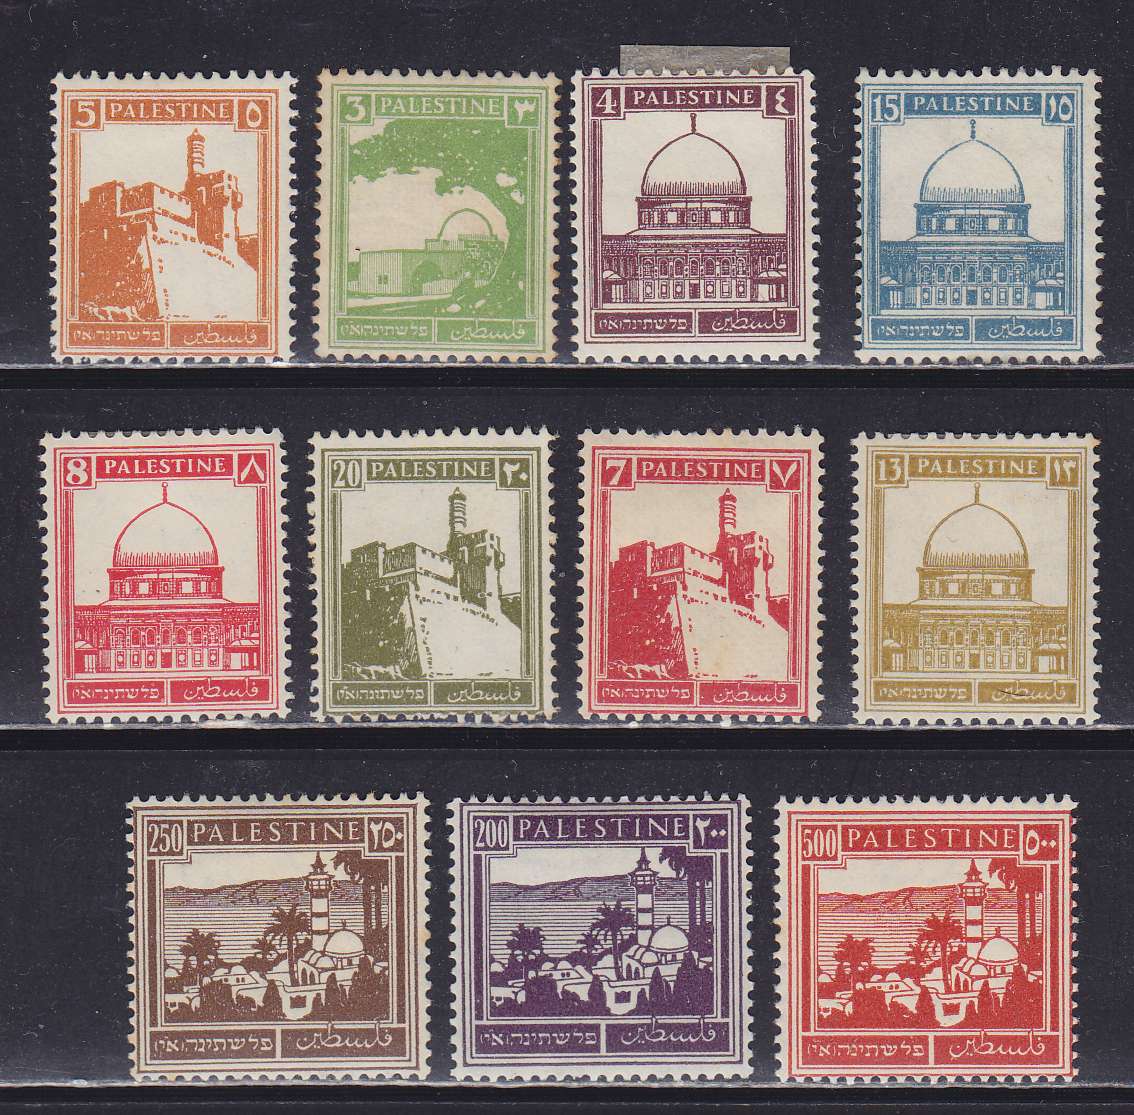 Название марка первого. Почтовые марки Палестины. Русские марки. Старинные почтовые марки. Самые красивые марки почтовые.